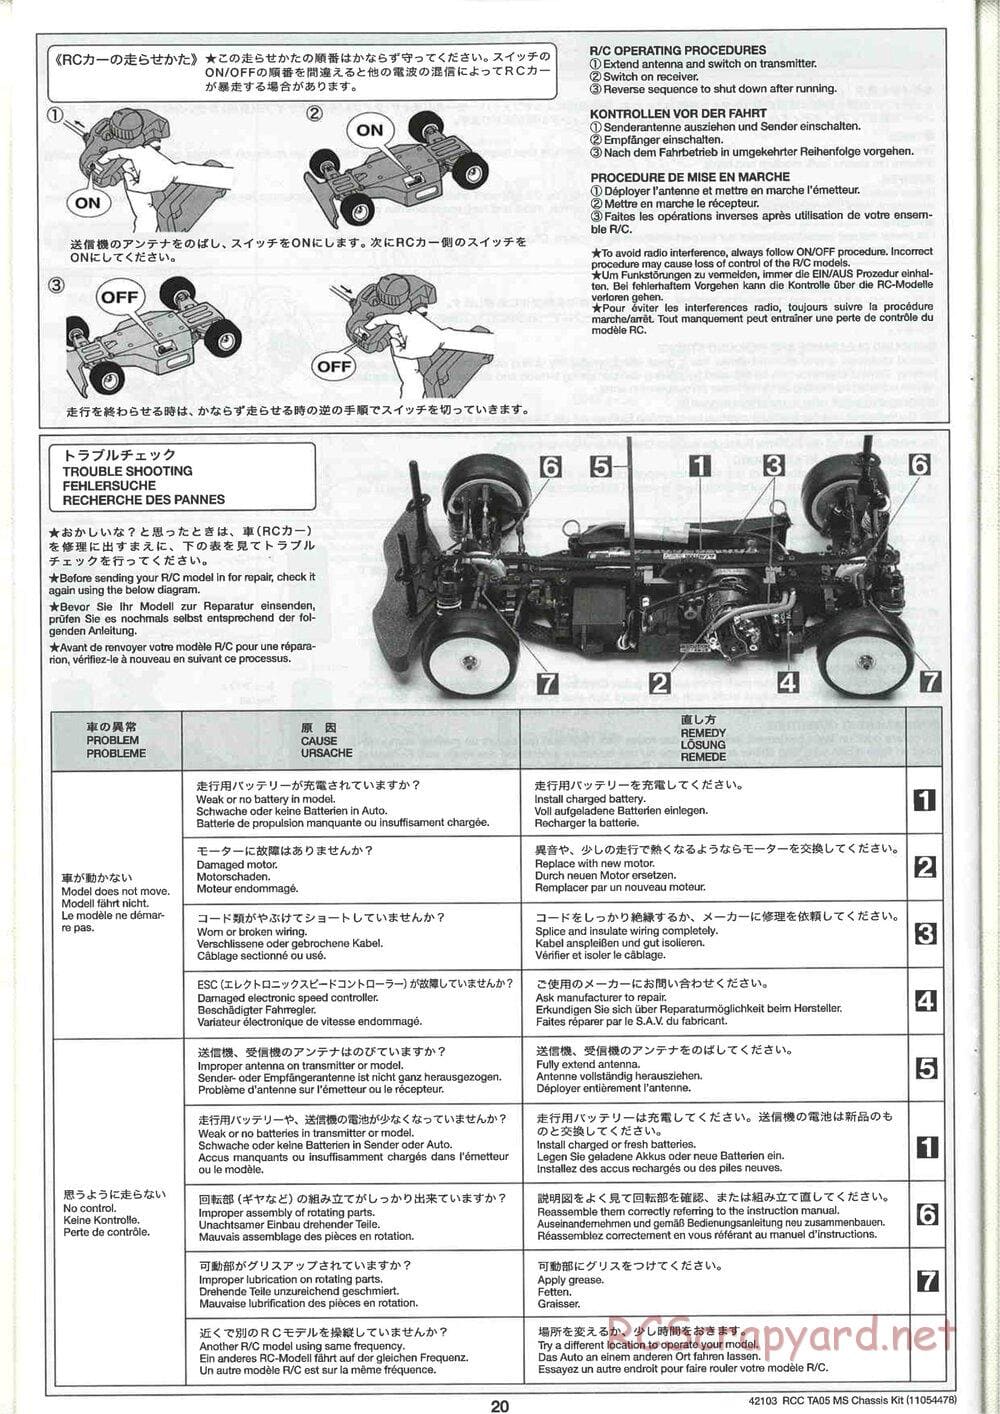 Tamiya - TA05 MS Chassis - Manual - Page 20